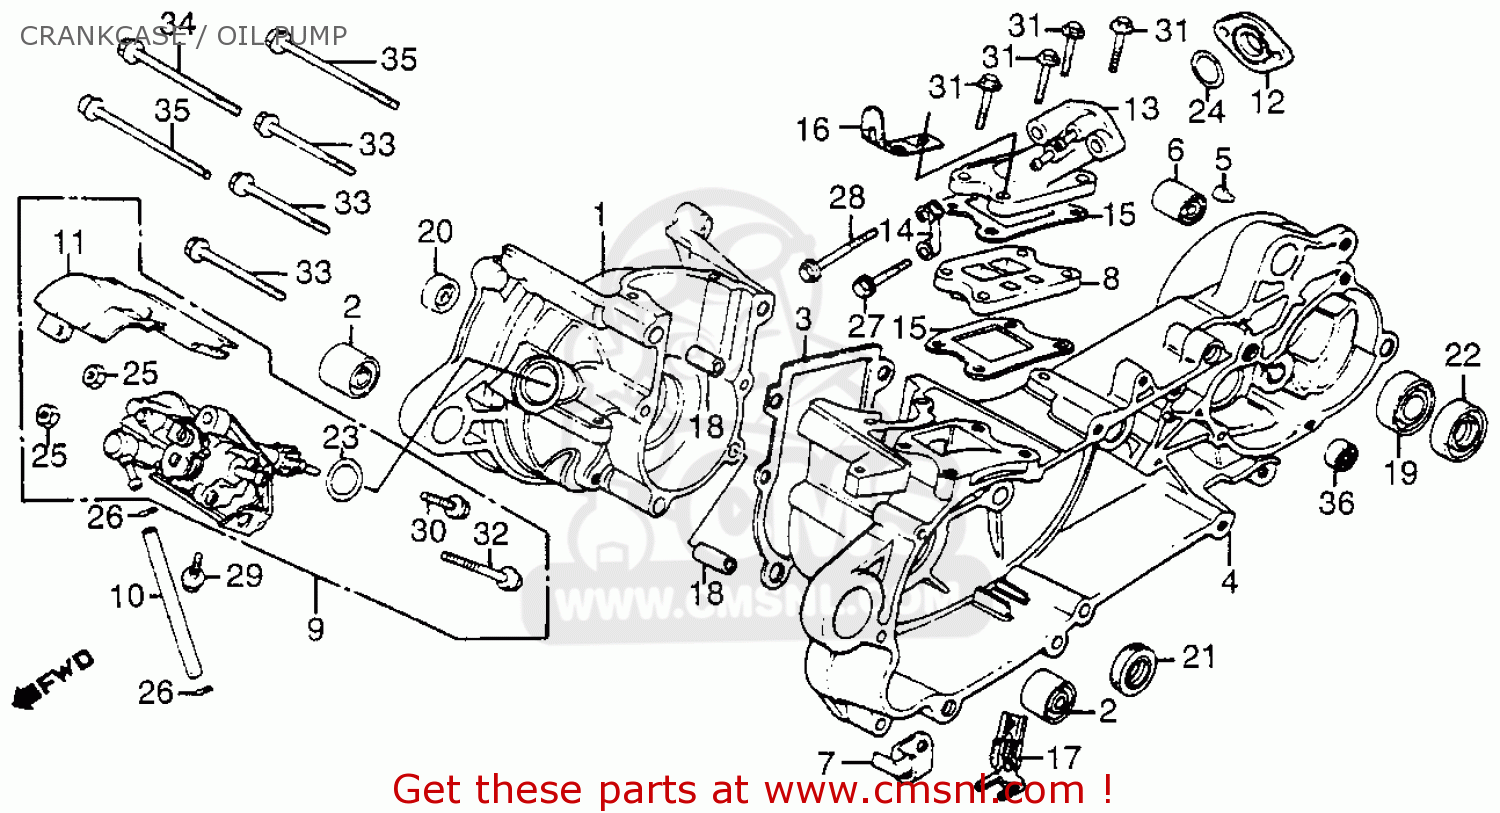 1984 Honda aero 125 parts #1